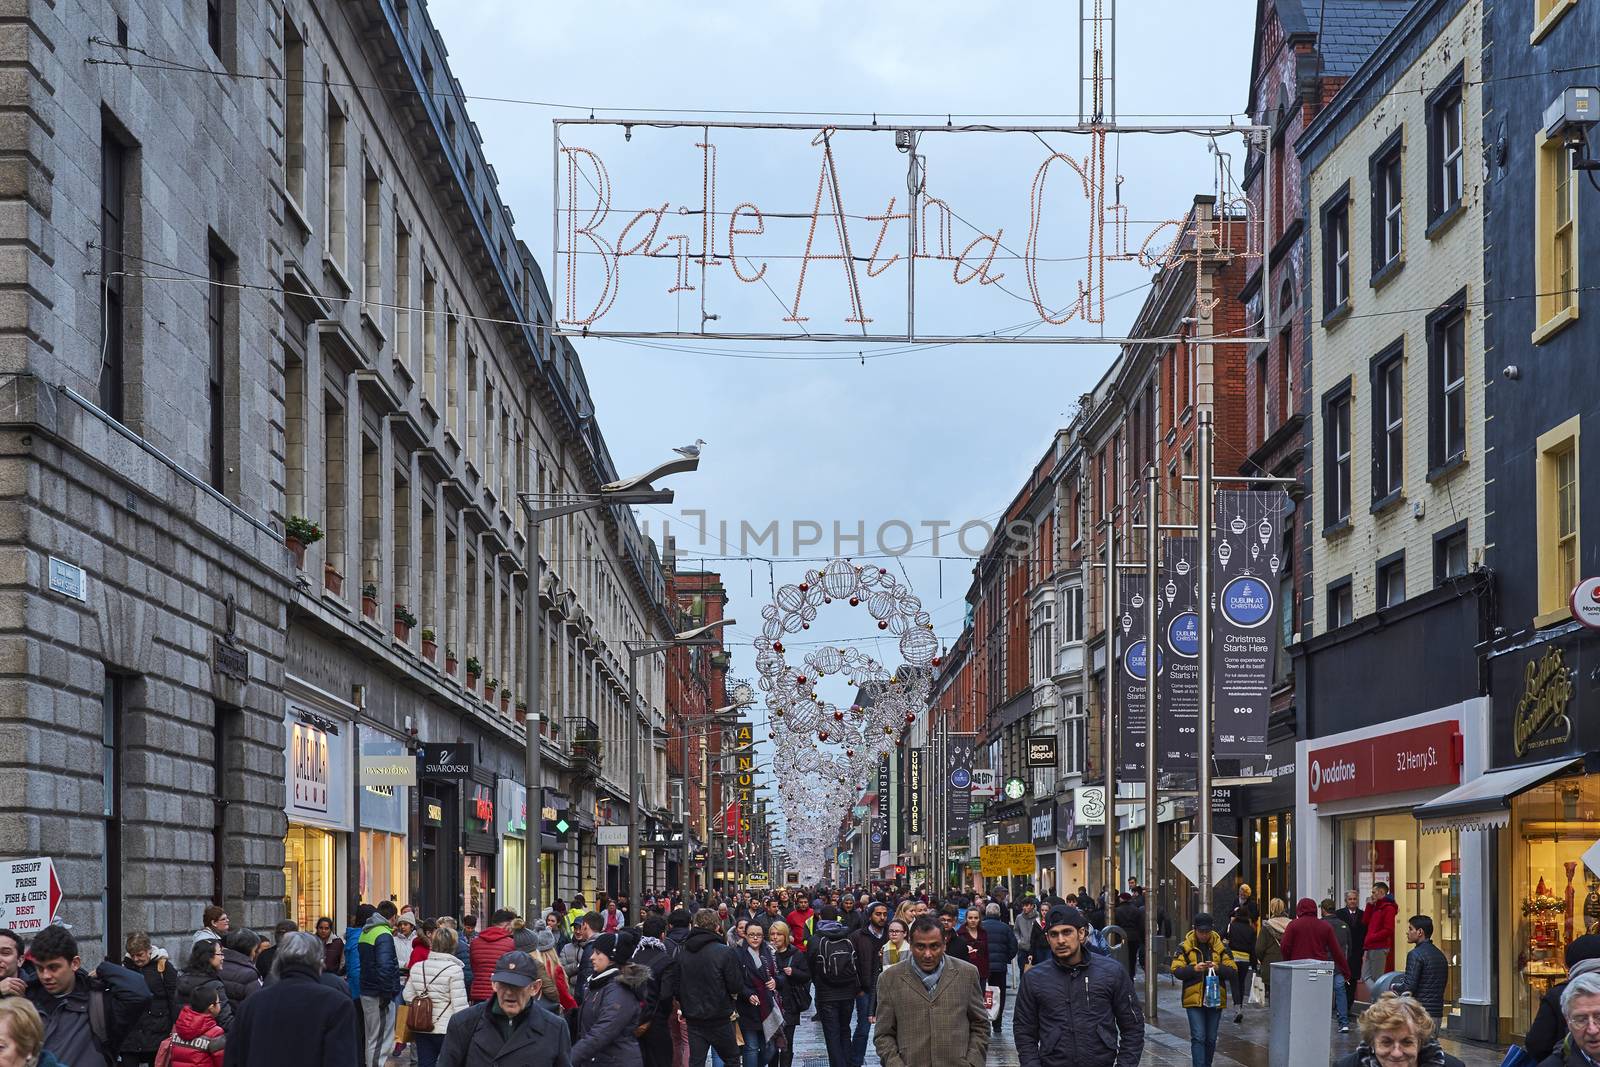 DUBLIN, IRELAND - JANUARY 05: Busy Henri Street full of pedestrians after the rain. The sign reads 'Baile Átha Cliath', Irish Celtic for 'Dublin'. January 05, 2016 in Dublin